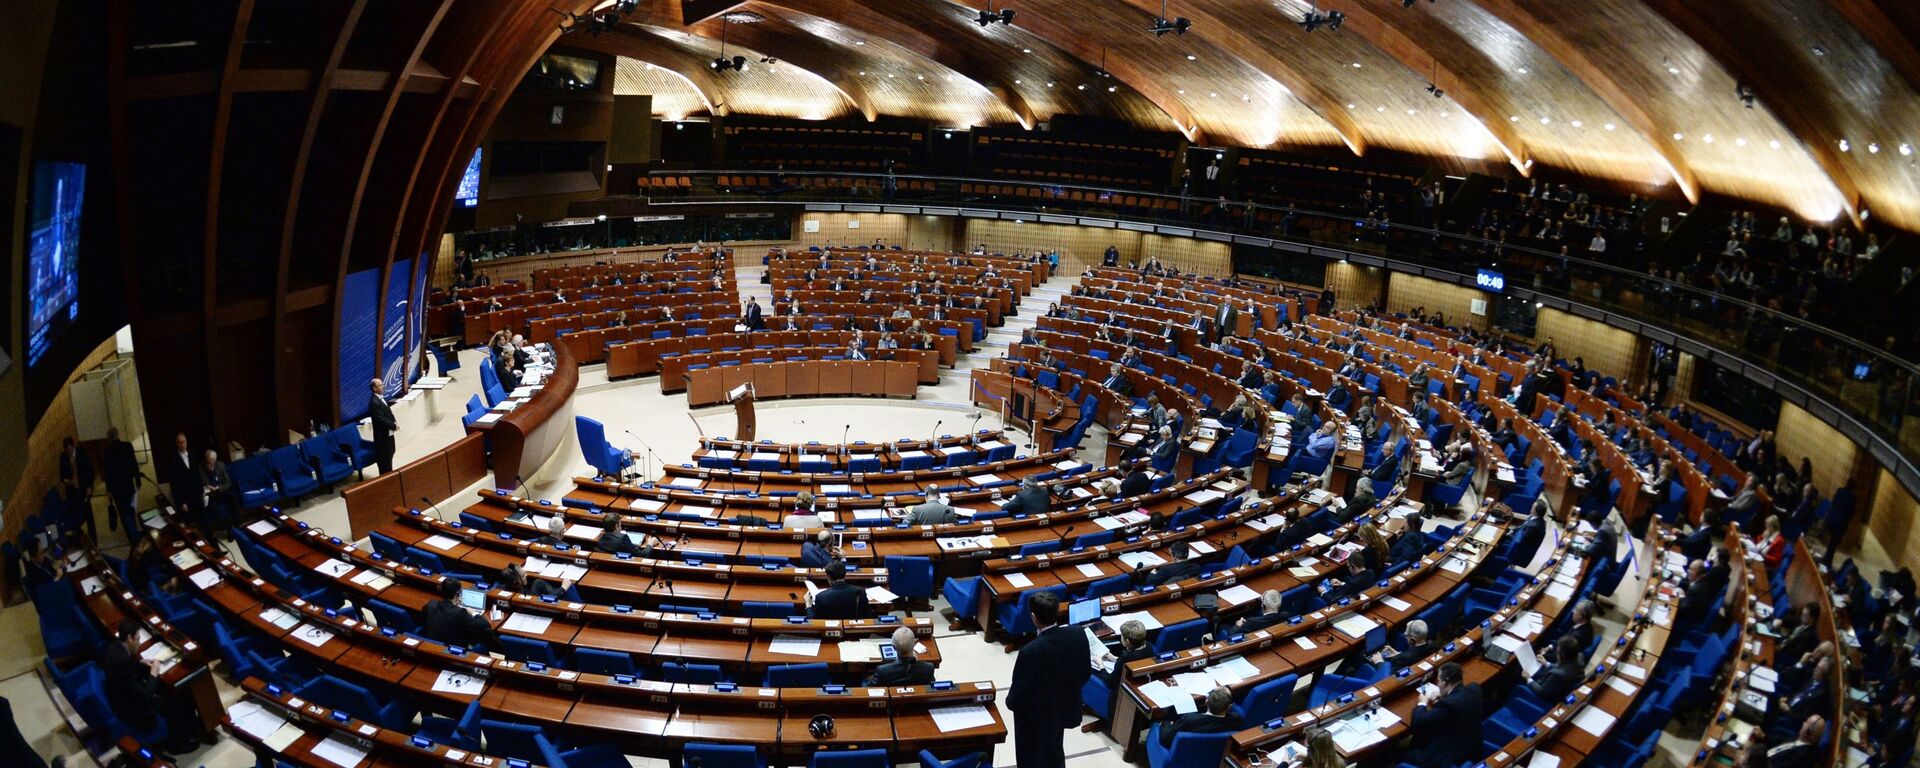 Пленарное заседание зимней сессии Парламентской ассамблеи Совета Европы - Sputnik Армения, 1920, 02.02.2021